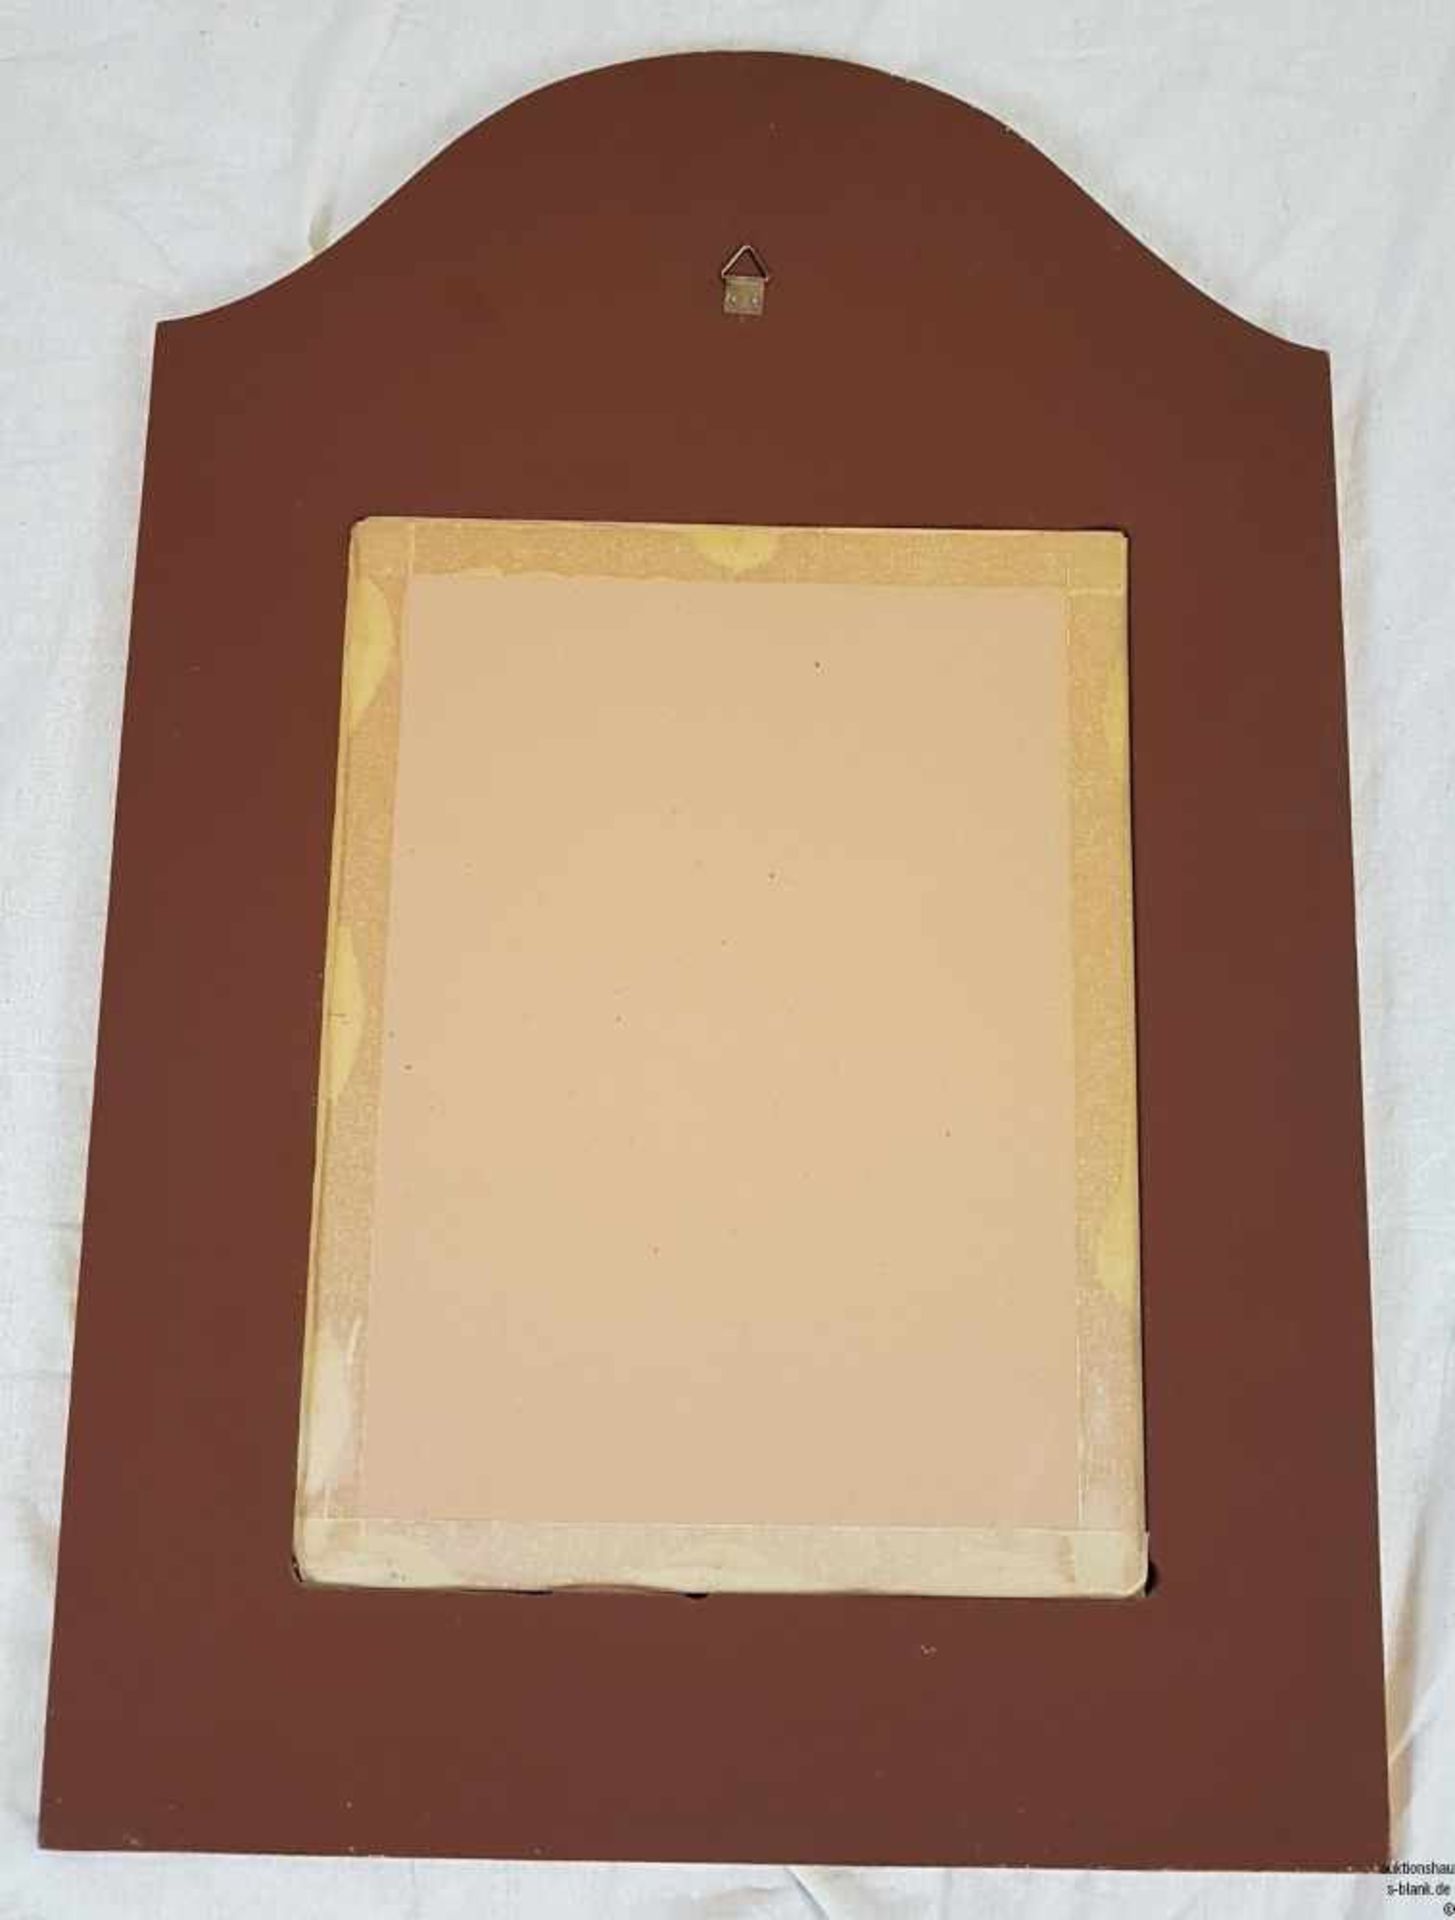 Wandspiegel - Holz, rechteckige Form mit gewelltem oberem Abschluss, gold und farbig gefasst, mit - Bild 3 aus 3